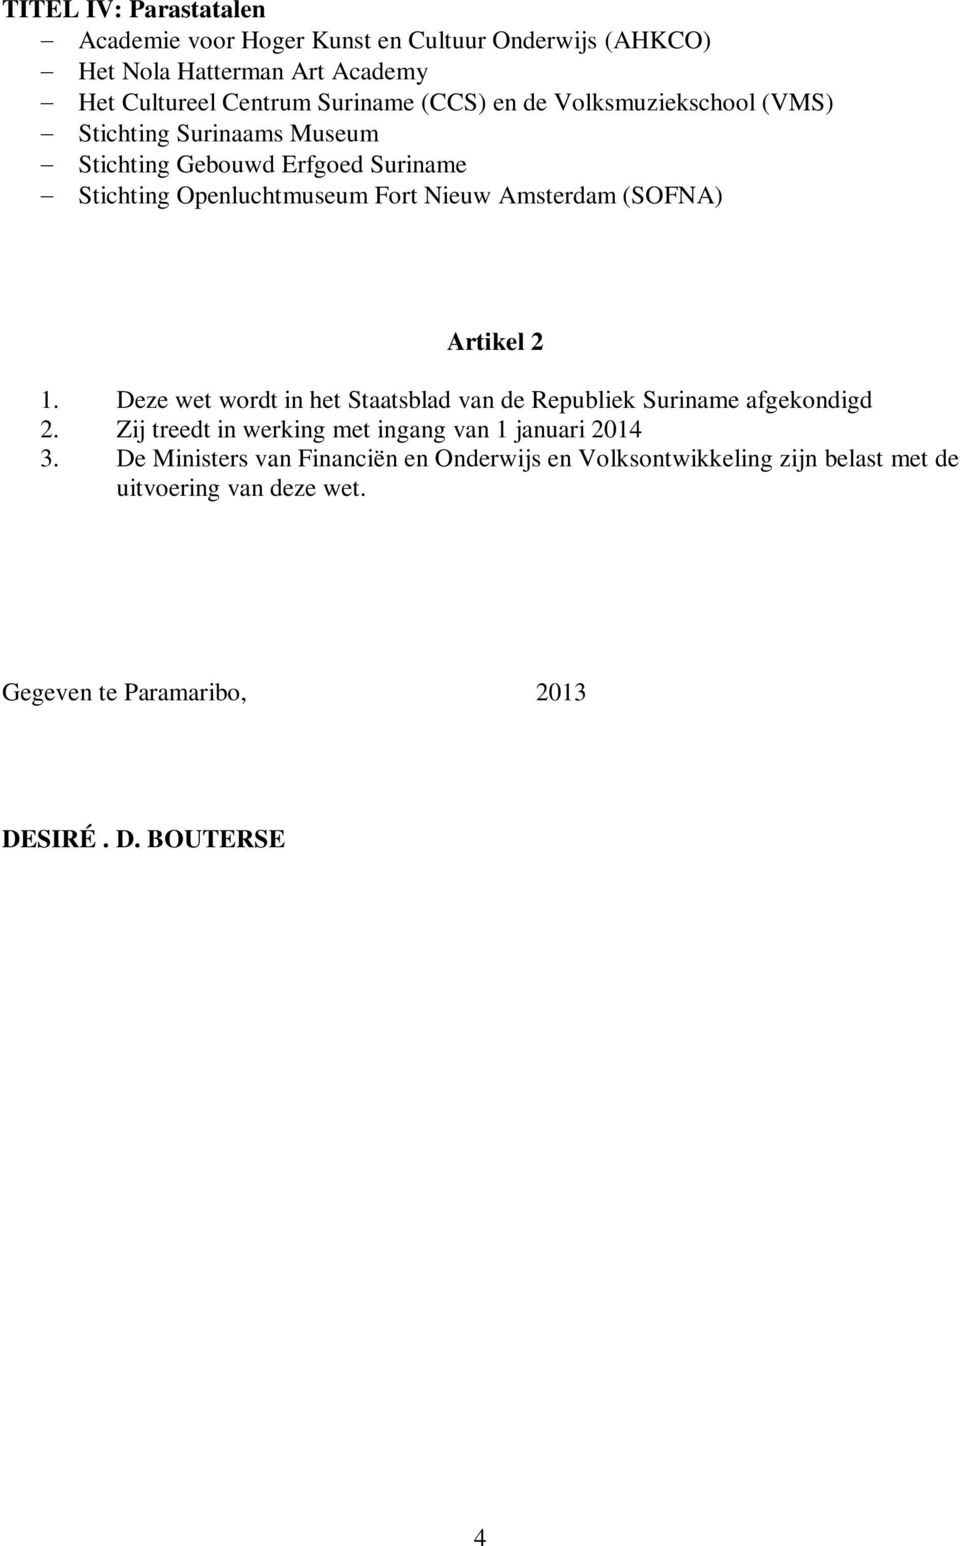 Artikel 2 1. Deze wet wordt in het Staatsblad van de Republiek Suriname afgekondigd 2. Zij treedt in werking met ingang van 1 januari 2014 3.